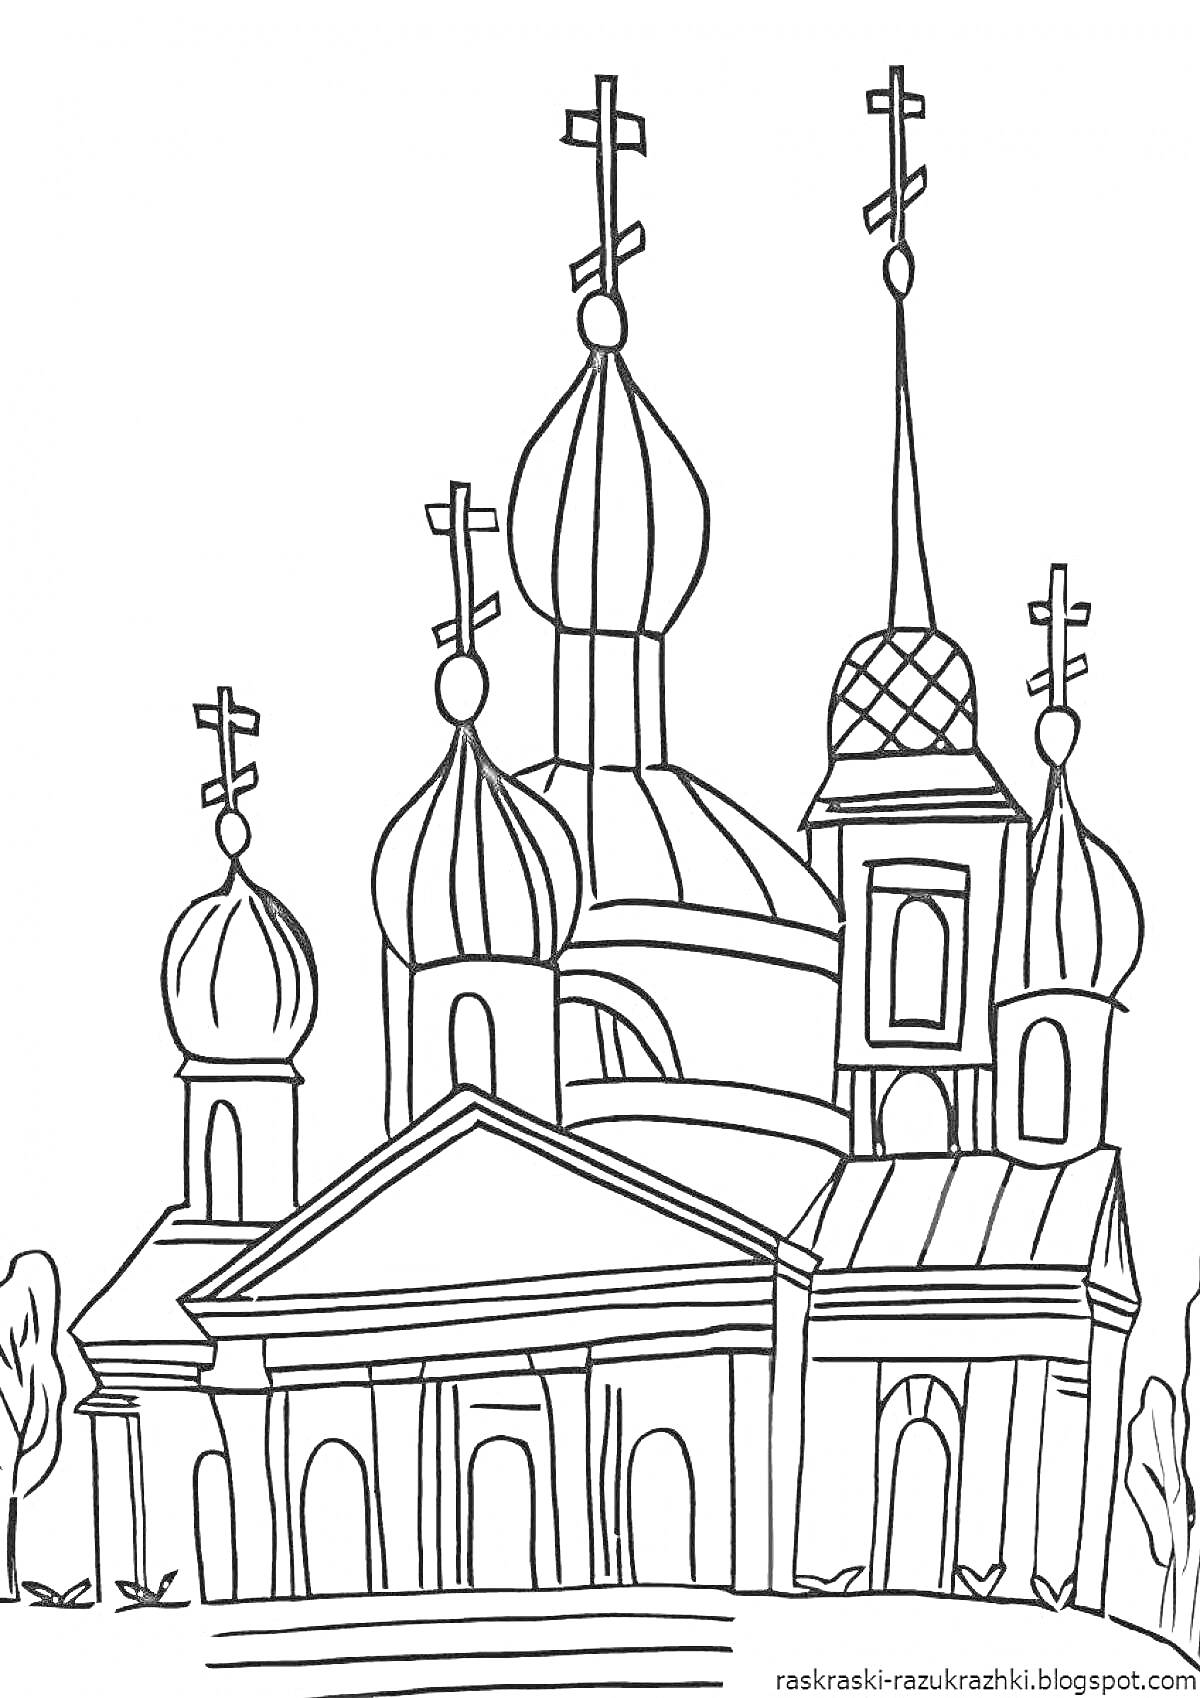 Раскраска Церковь с пятью куполами и колоннами, деревья вдоль стен